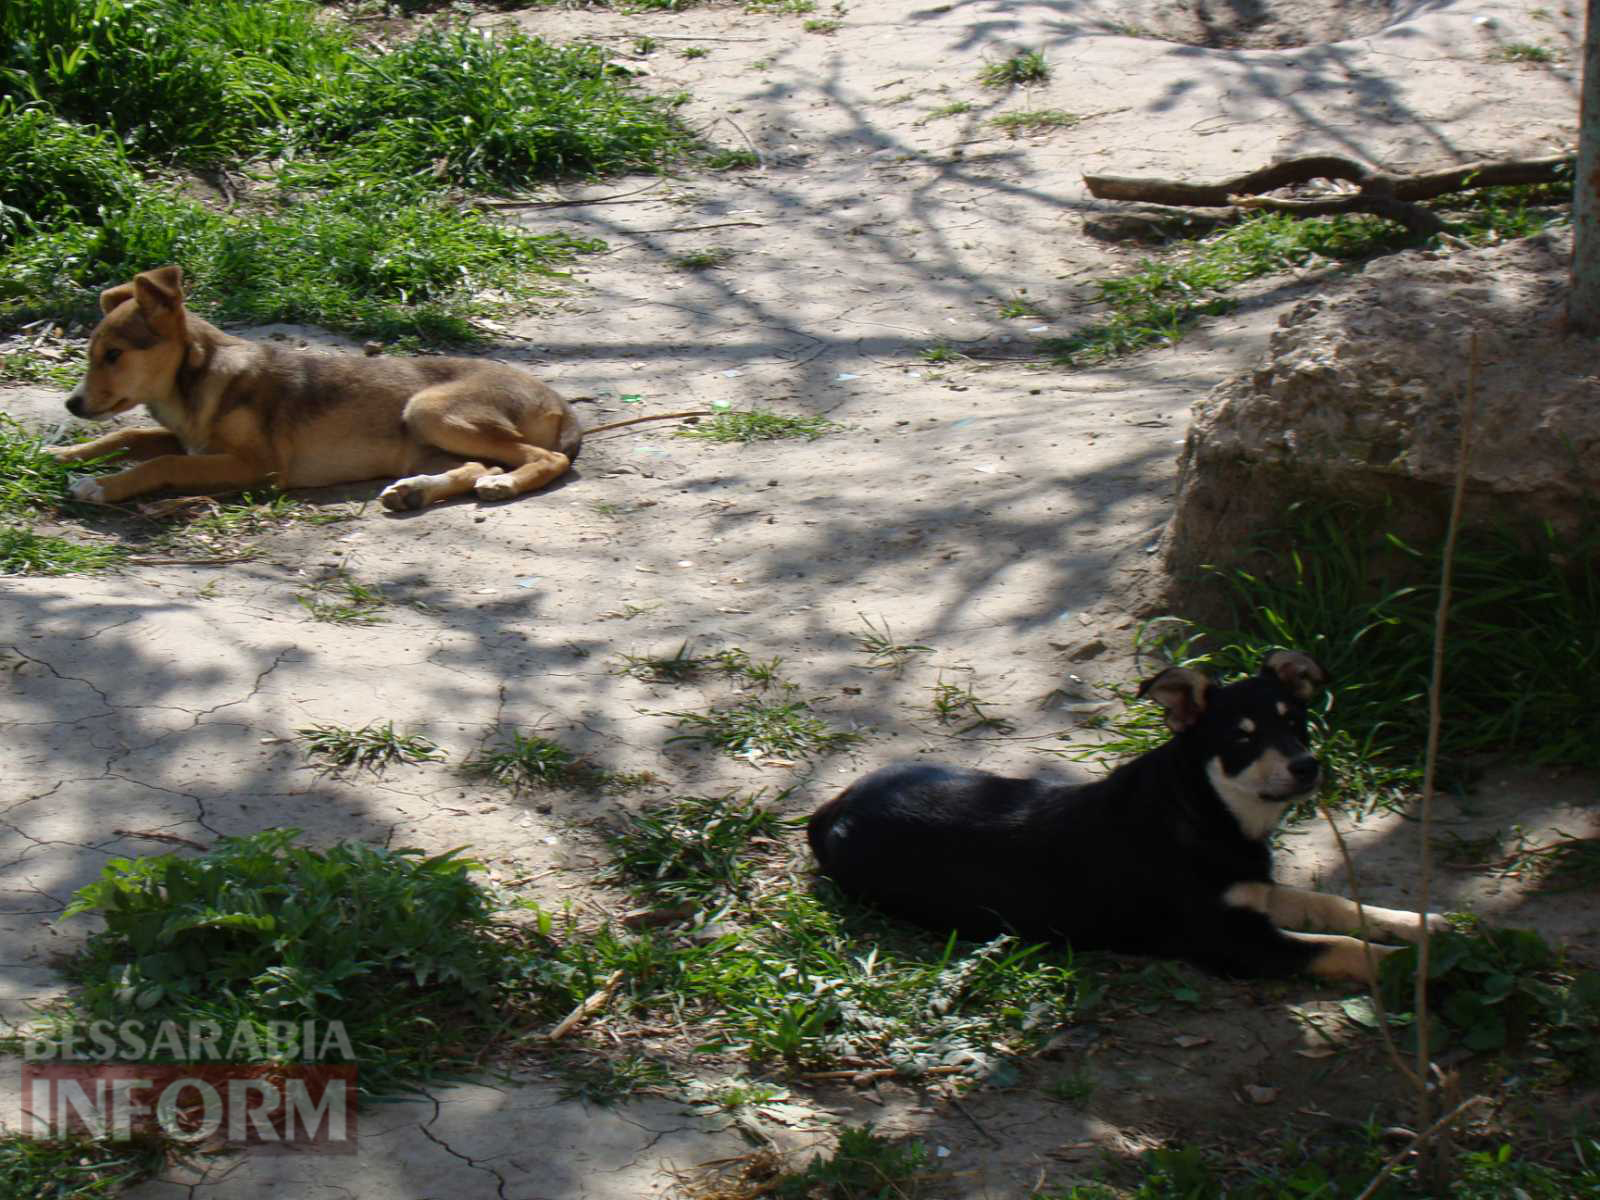 В Рени местные власти фактически игнорируют проблему огромного количества бродячих собак: бездомные животные – хозяева города?